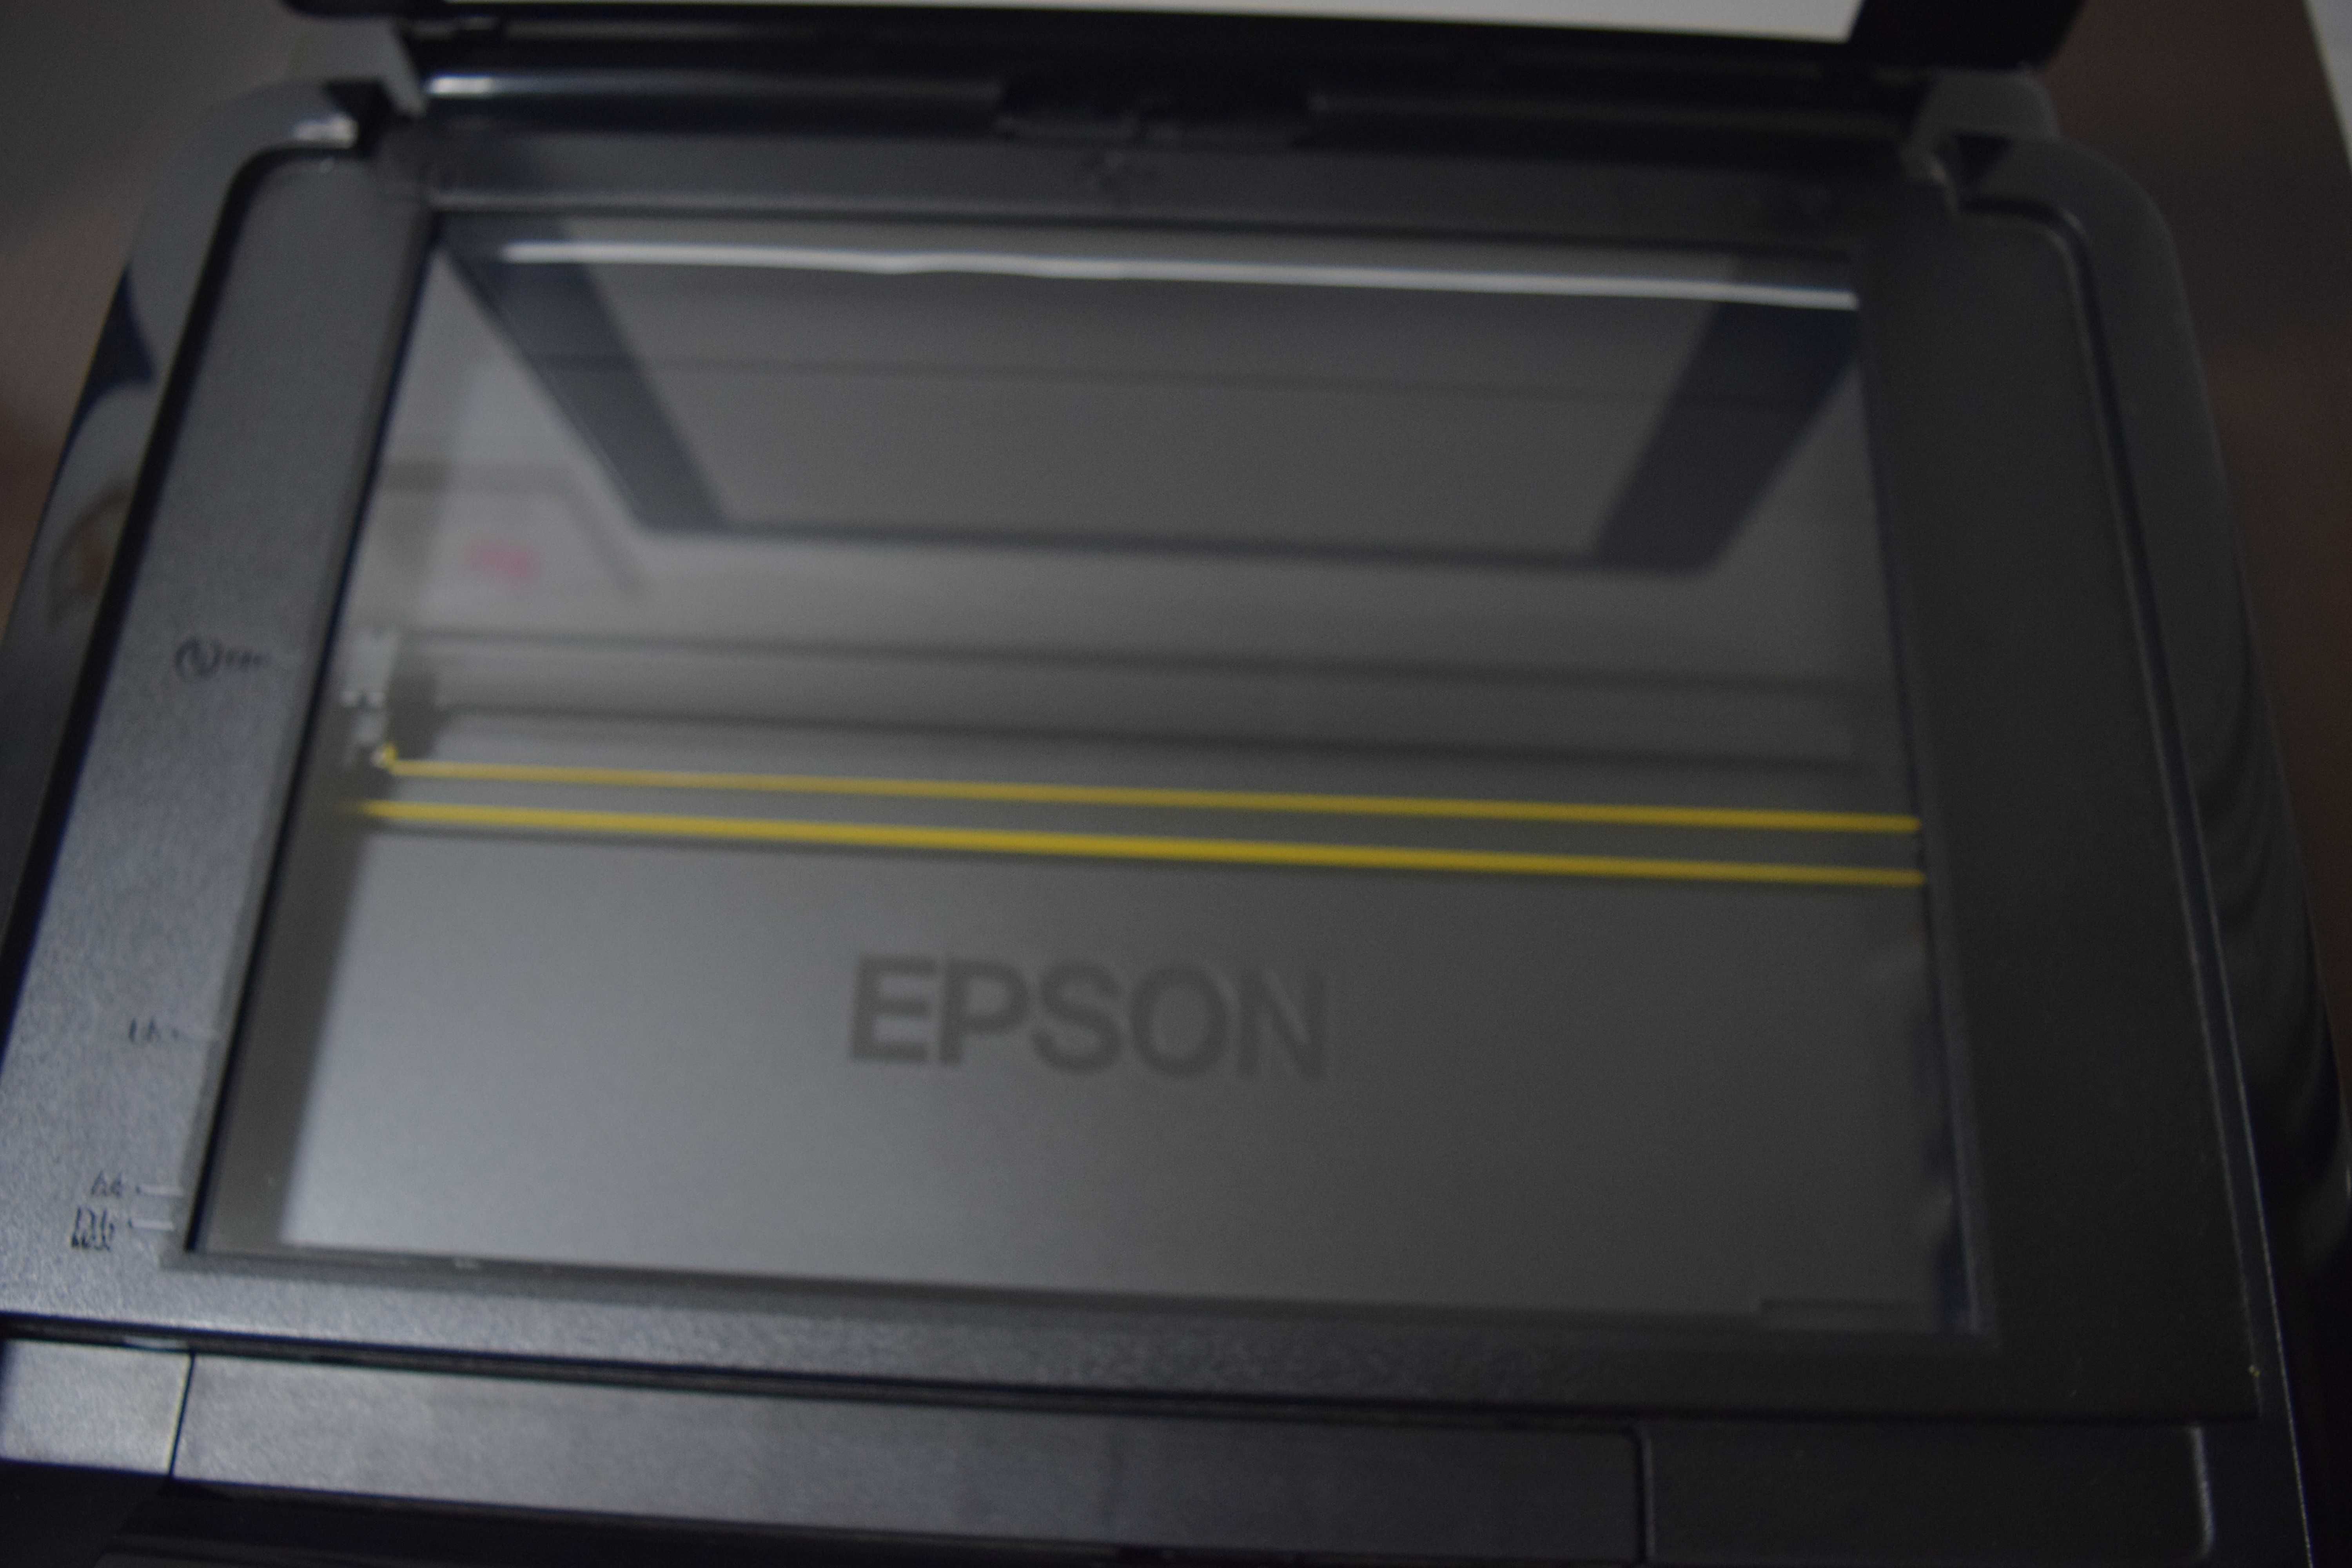 Impressora Epson Stylus Photo PX710W